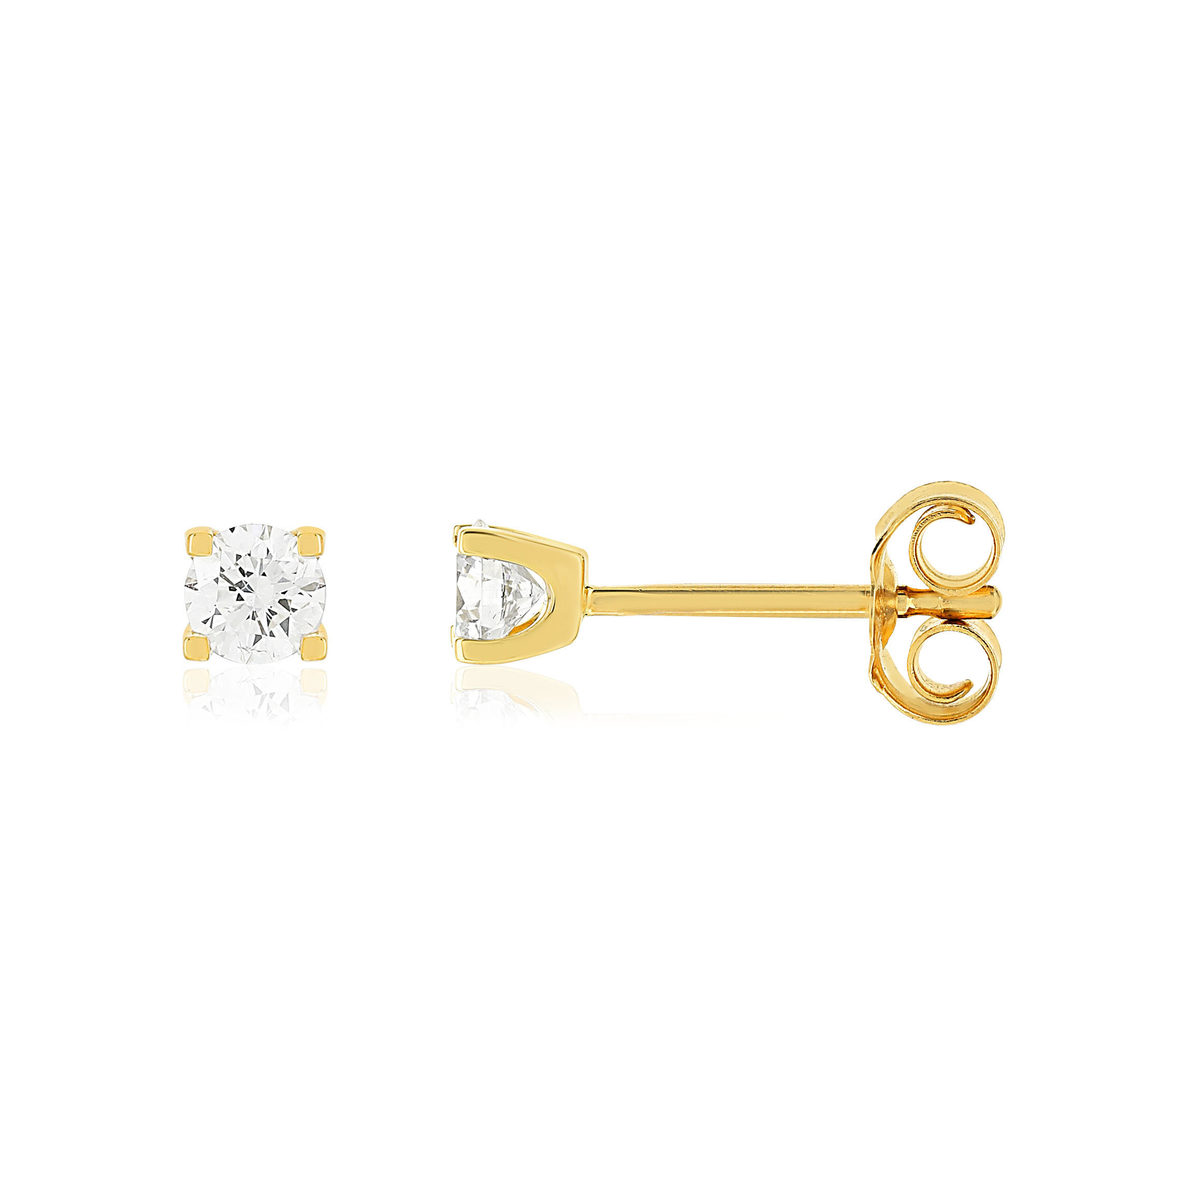 Boucles d'oreilles or jaune 750 diamants synthétiques 0.30 carat